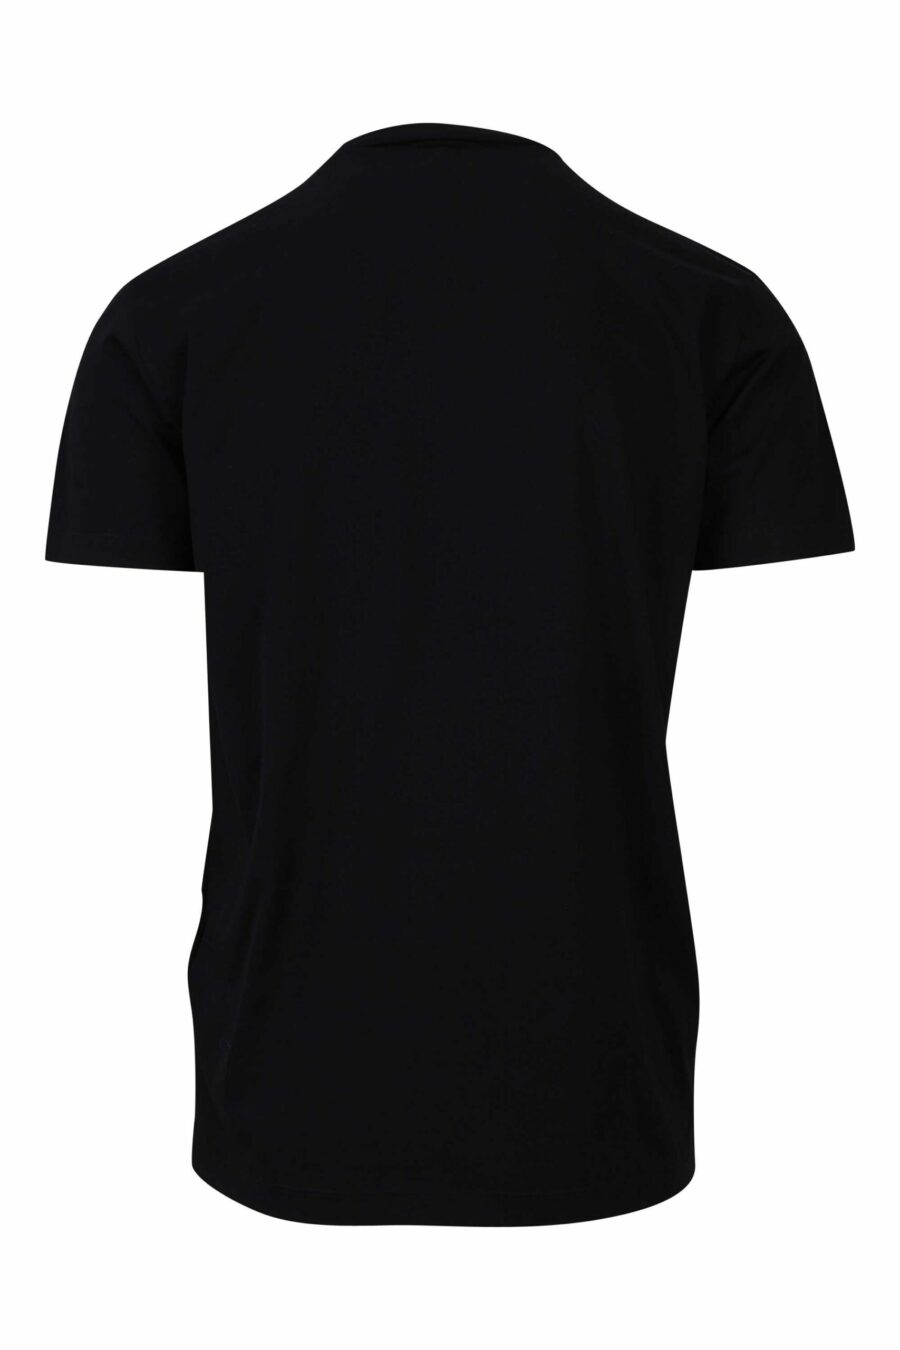 T-shirt noir avec maxilogo gothique bleu et rouge - 8054148085940 1 1 à l'échelle